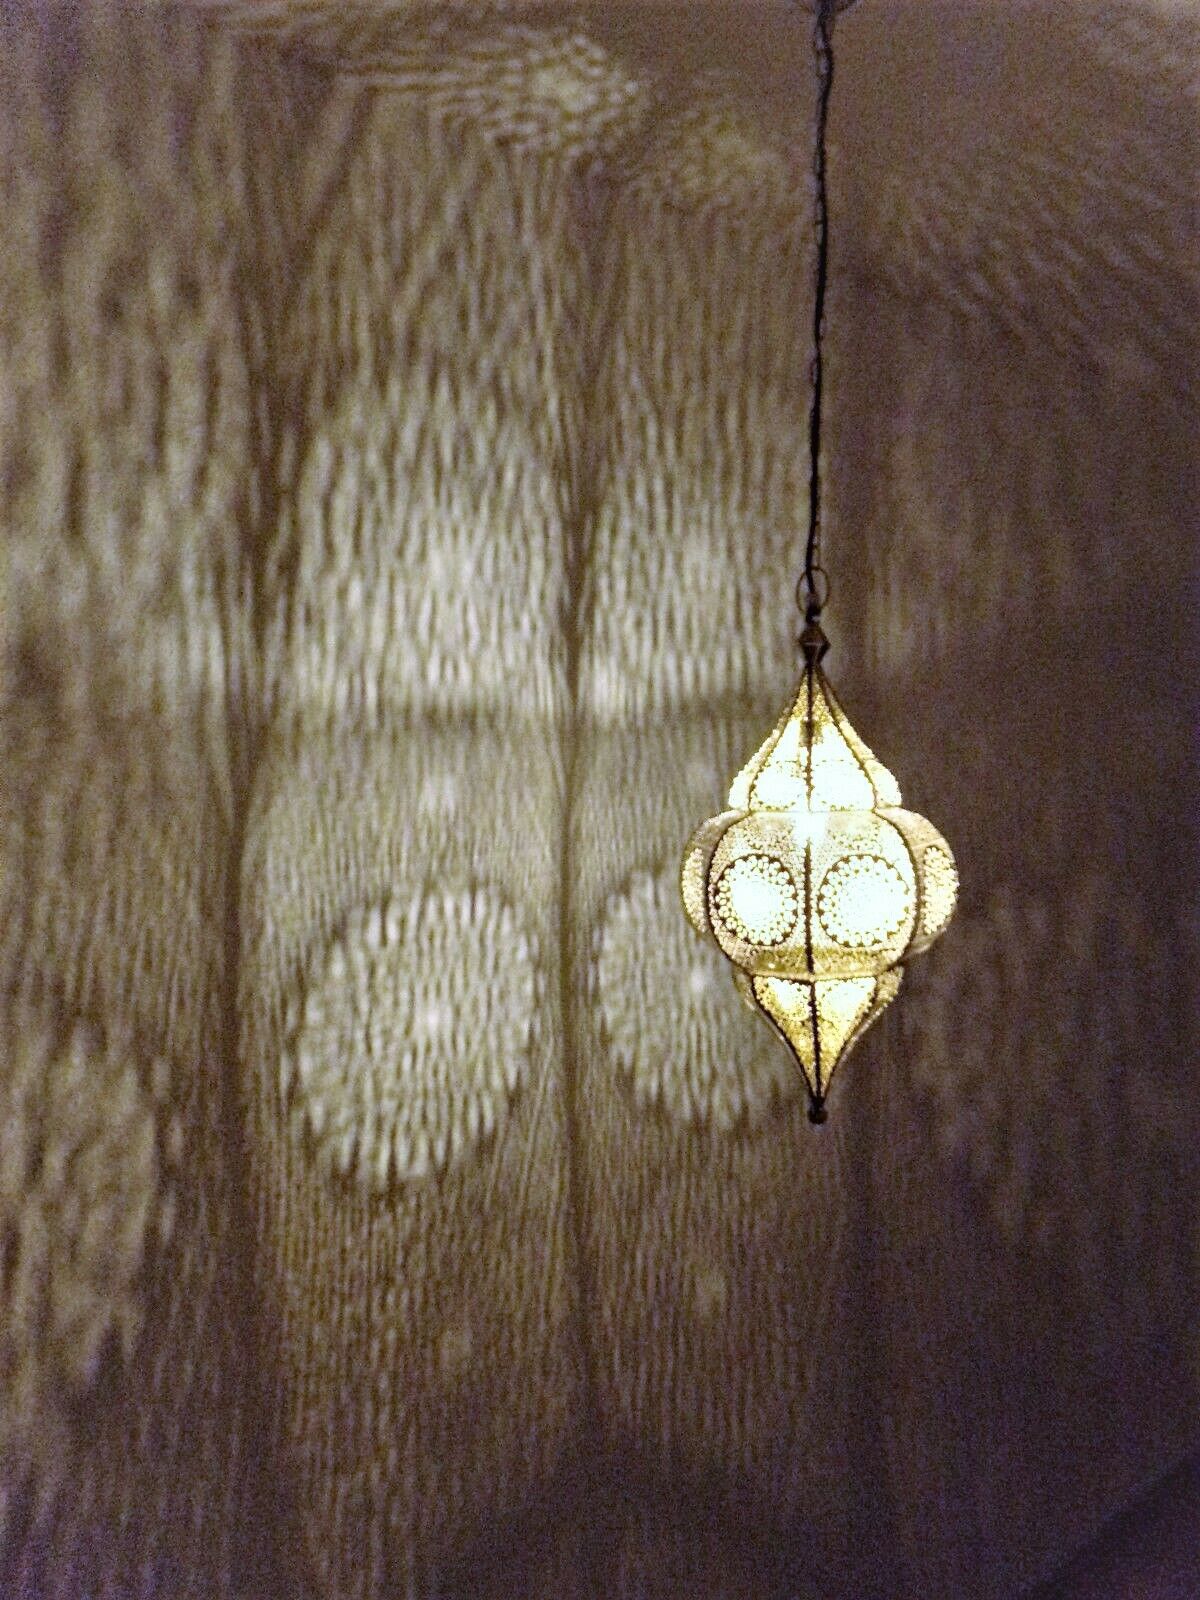 Orientalische Lampe Pendelleuchte Design Farbe Shaby Weiss Gold